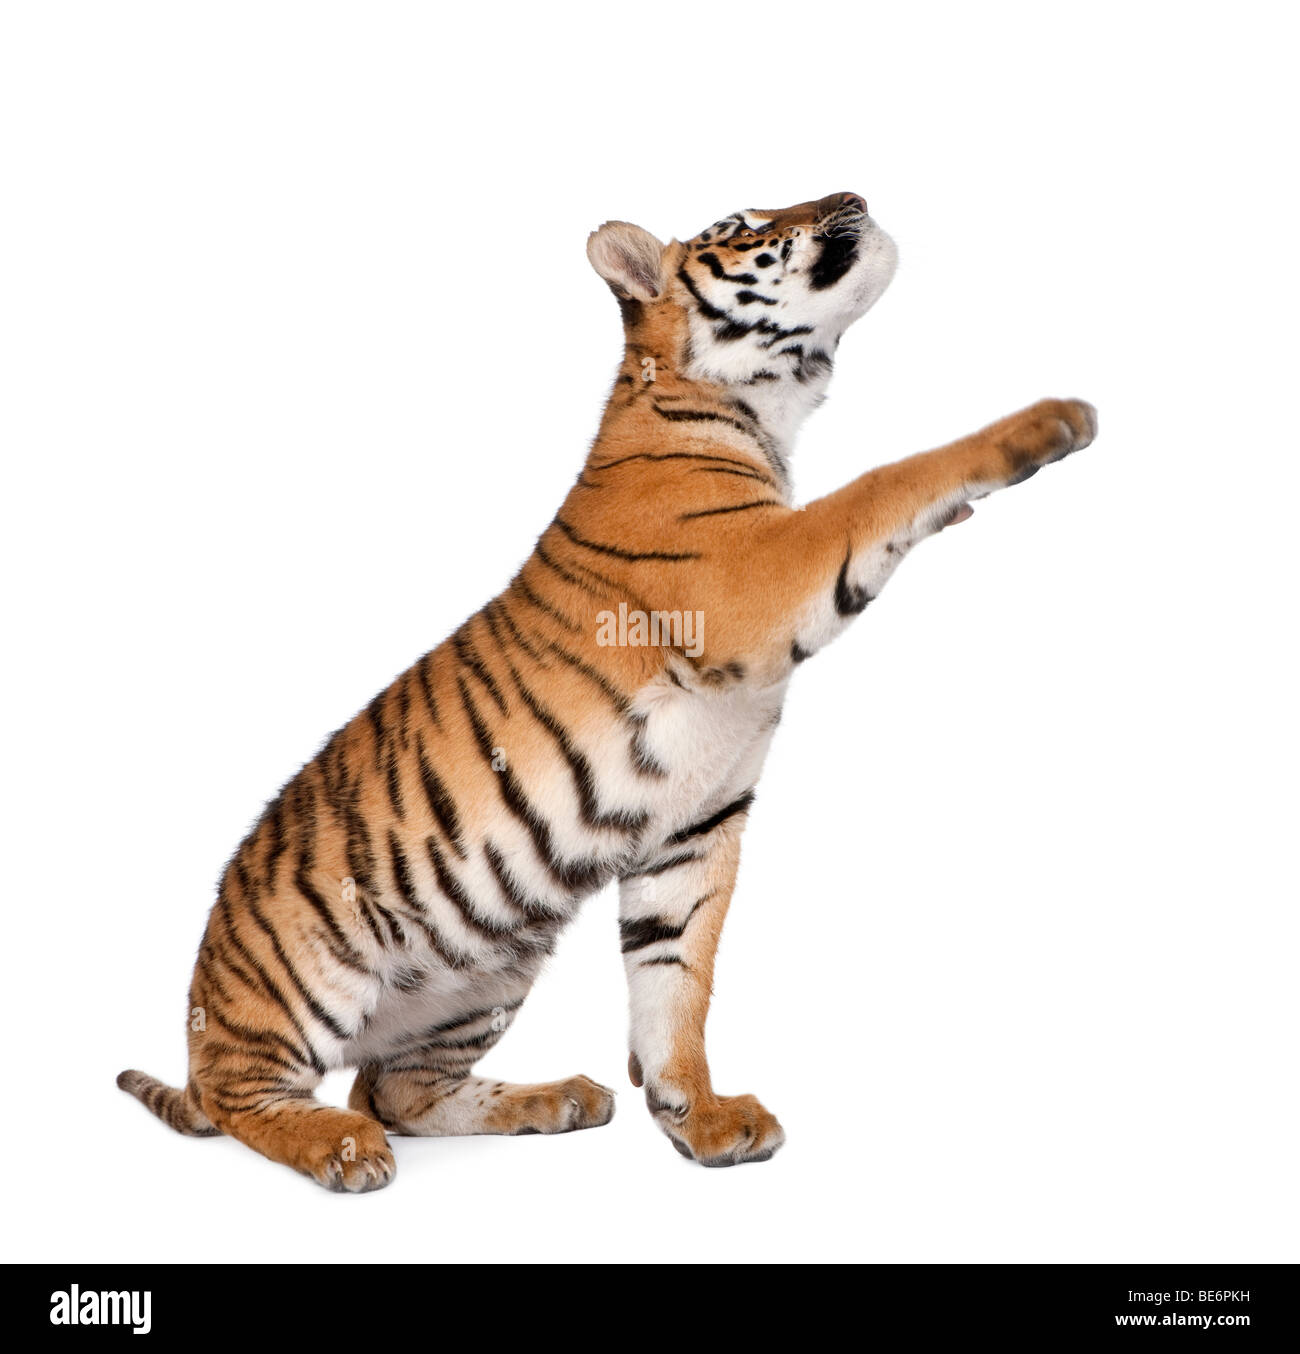 Bengal Tiger, Panthera tigris tigris, 1 year old, reaching in front of white background, studio shot Stock Photo